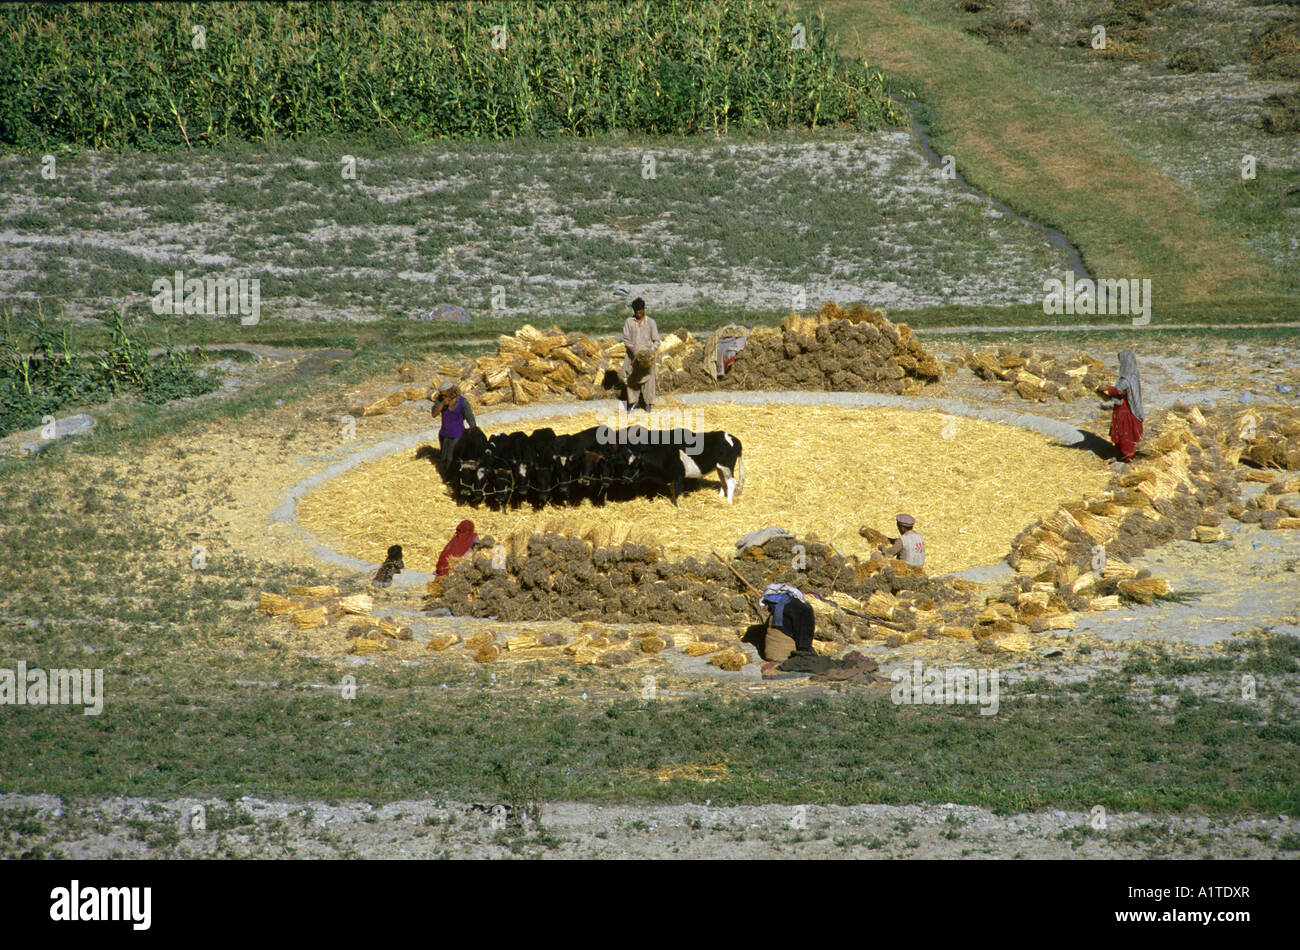 Les vaches battage du blé dans la région de la vallée de la culture bagrot karakoram Pakistan Banque D'Images